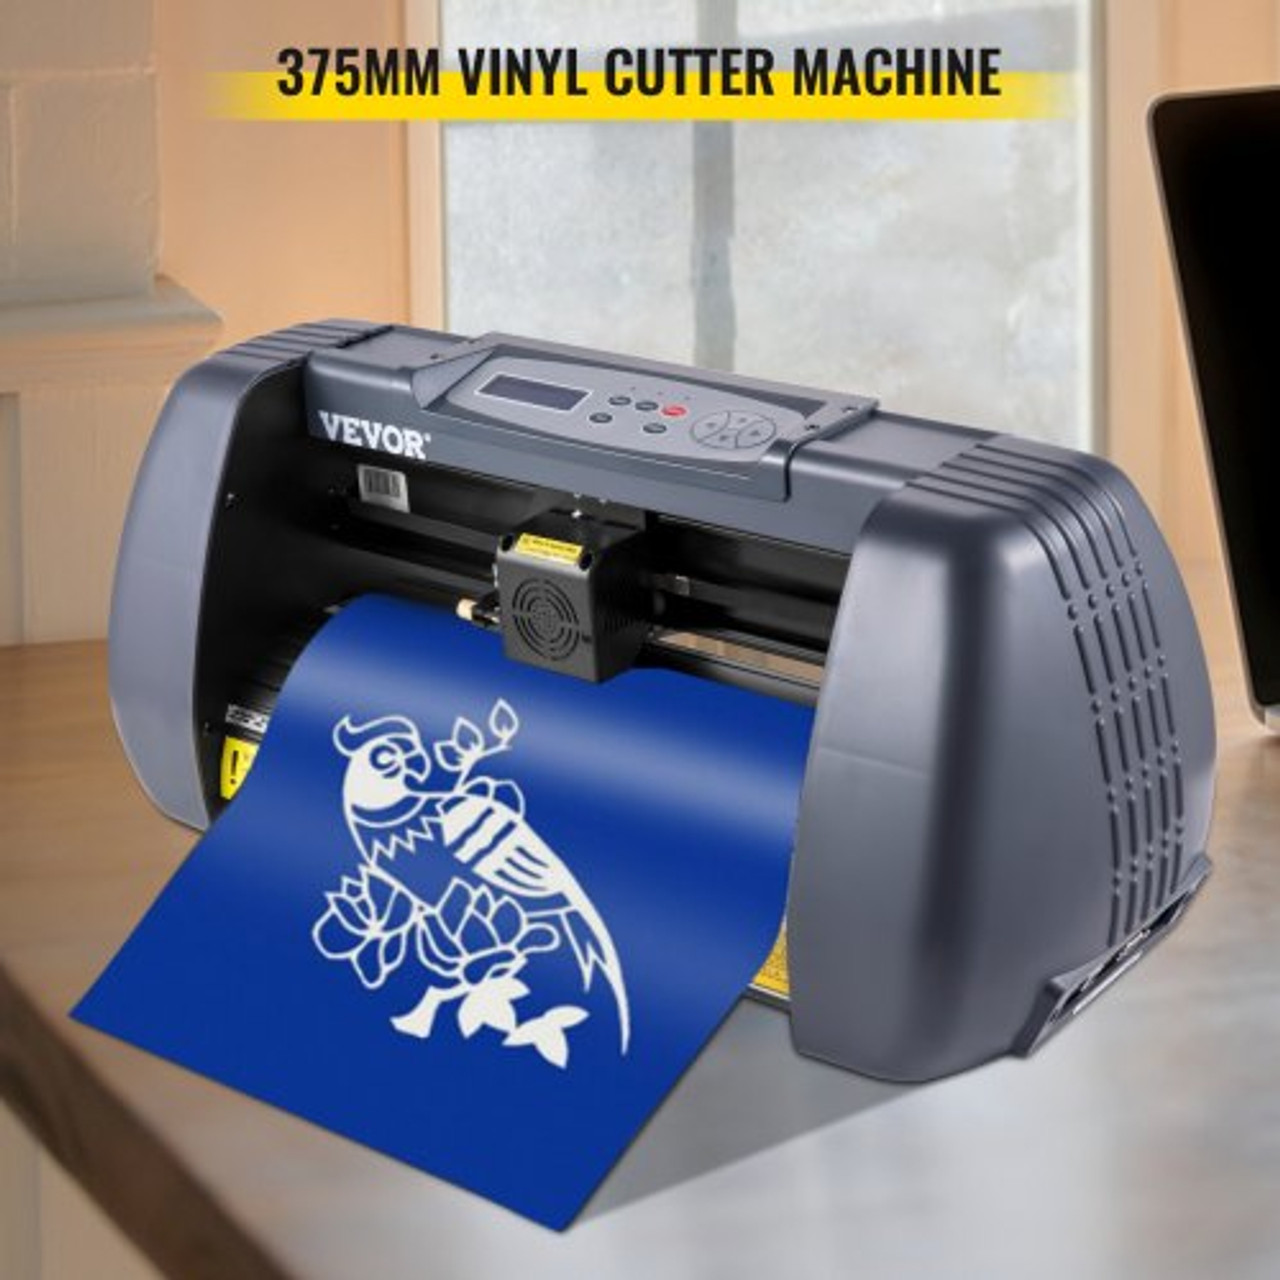 VEVOR Vinyl Cutter Machine U-Disk Offline, 720mm Vinyl Printer, 28 inch Plotter Printer with Sturdy Floor Stand Vinyl Cutting Machine Adjustable Force